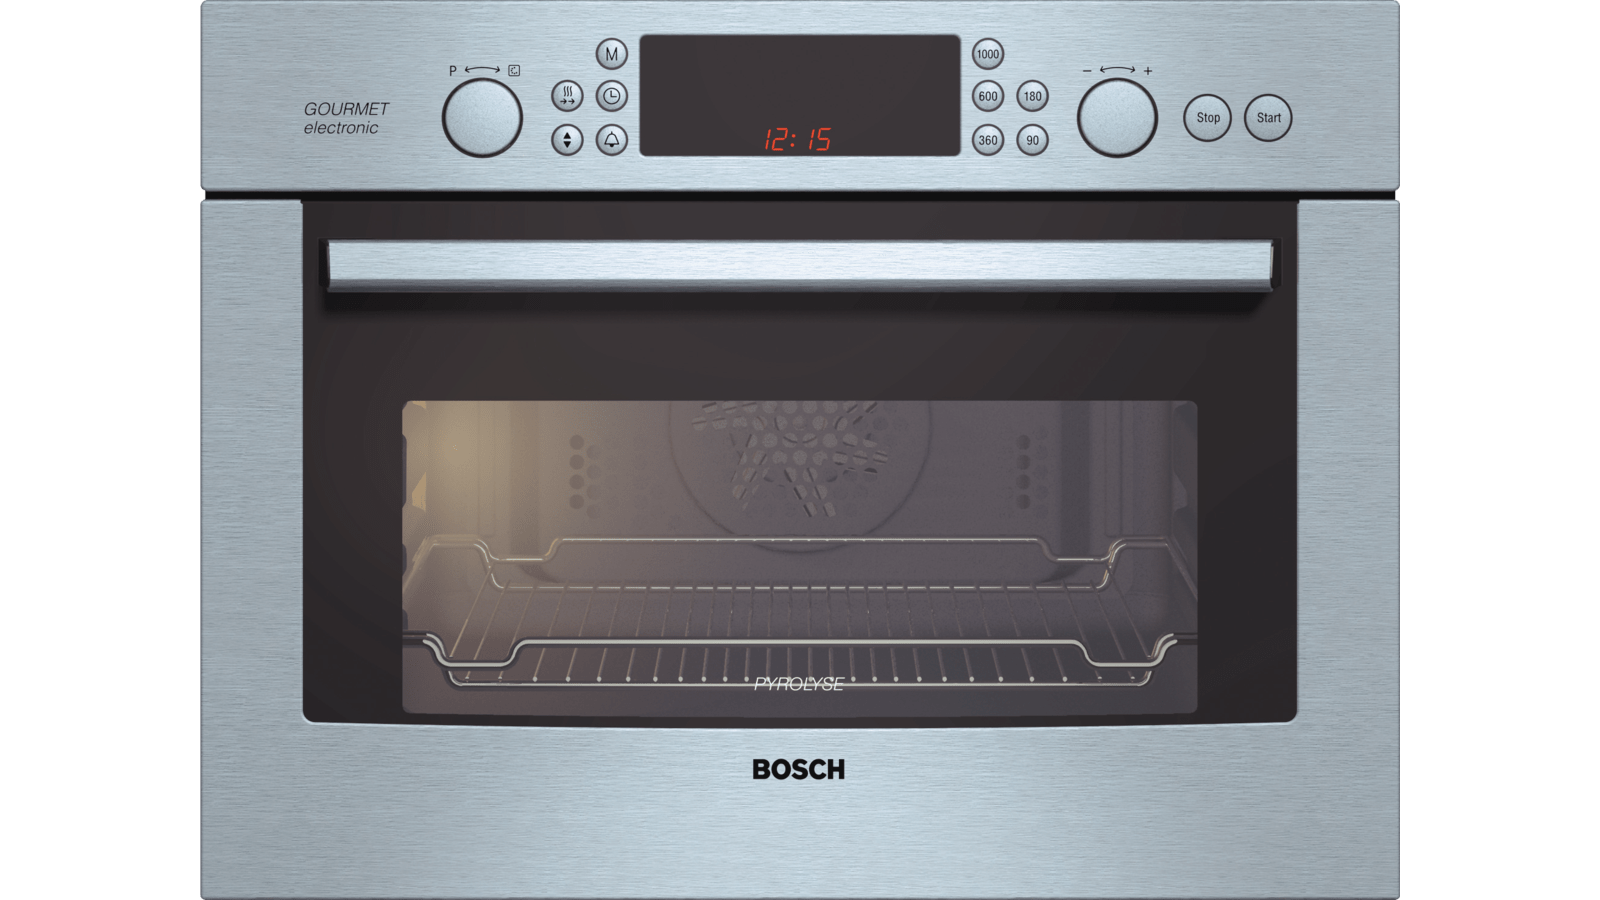 Bosch added steam духовой шкаф фото 113